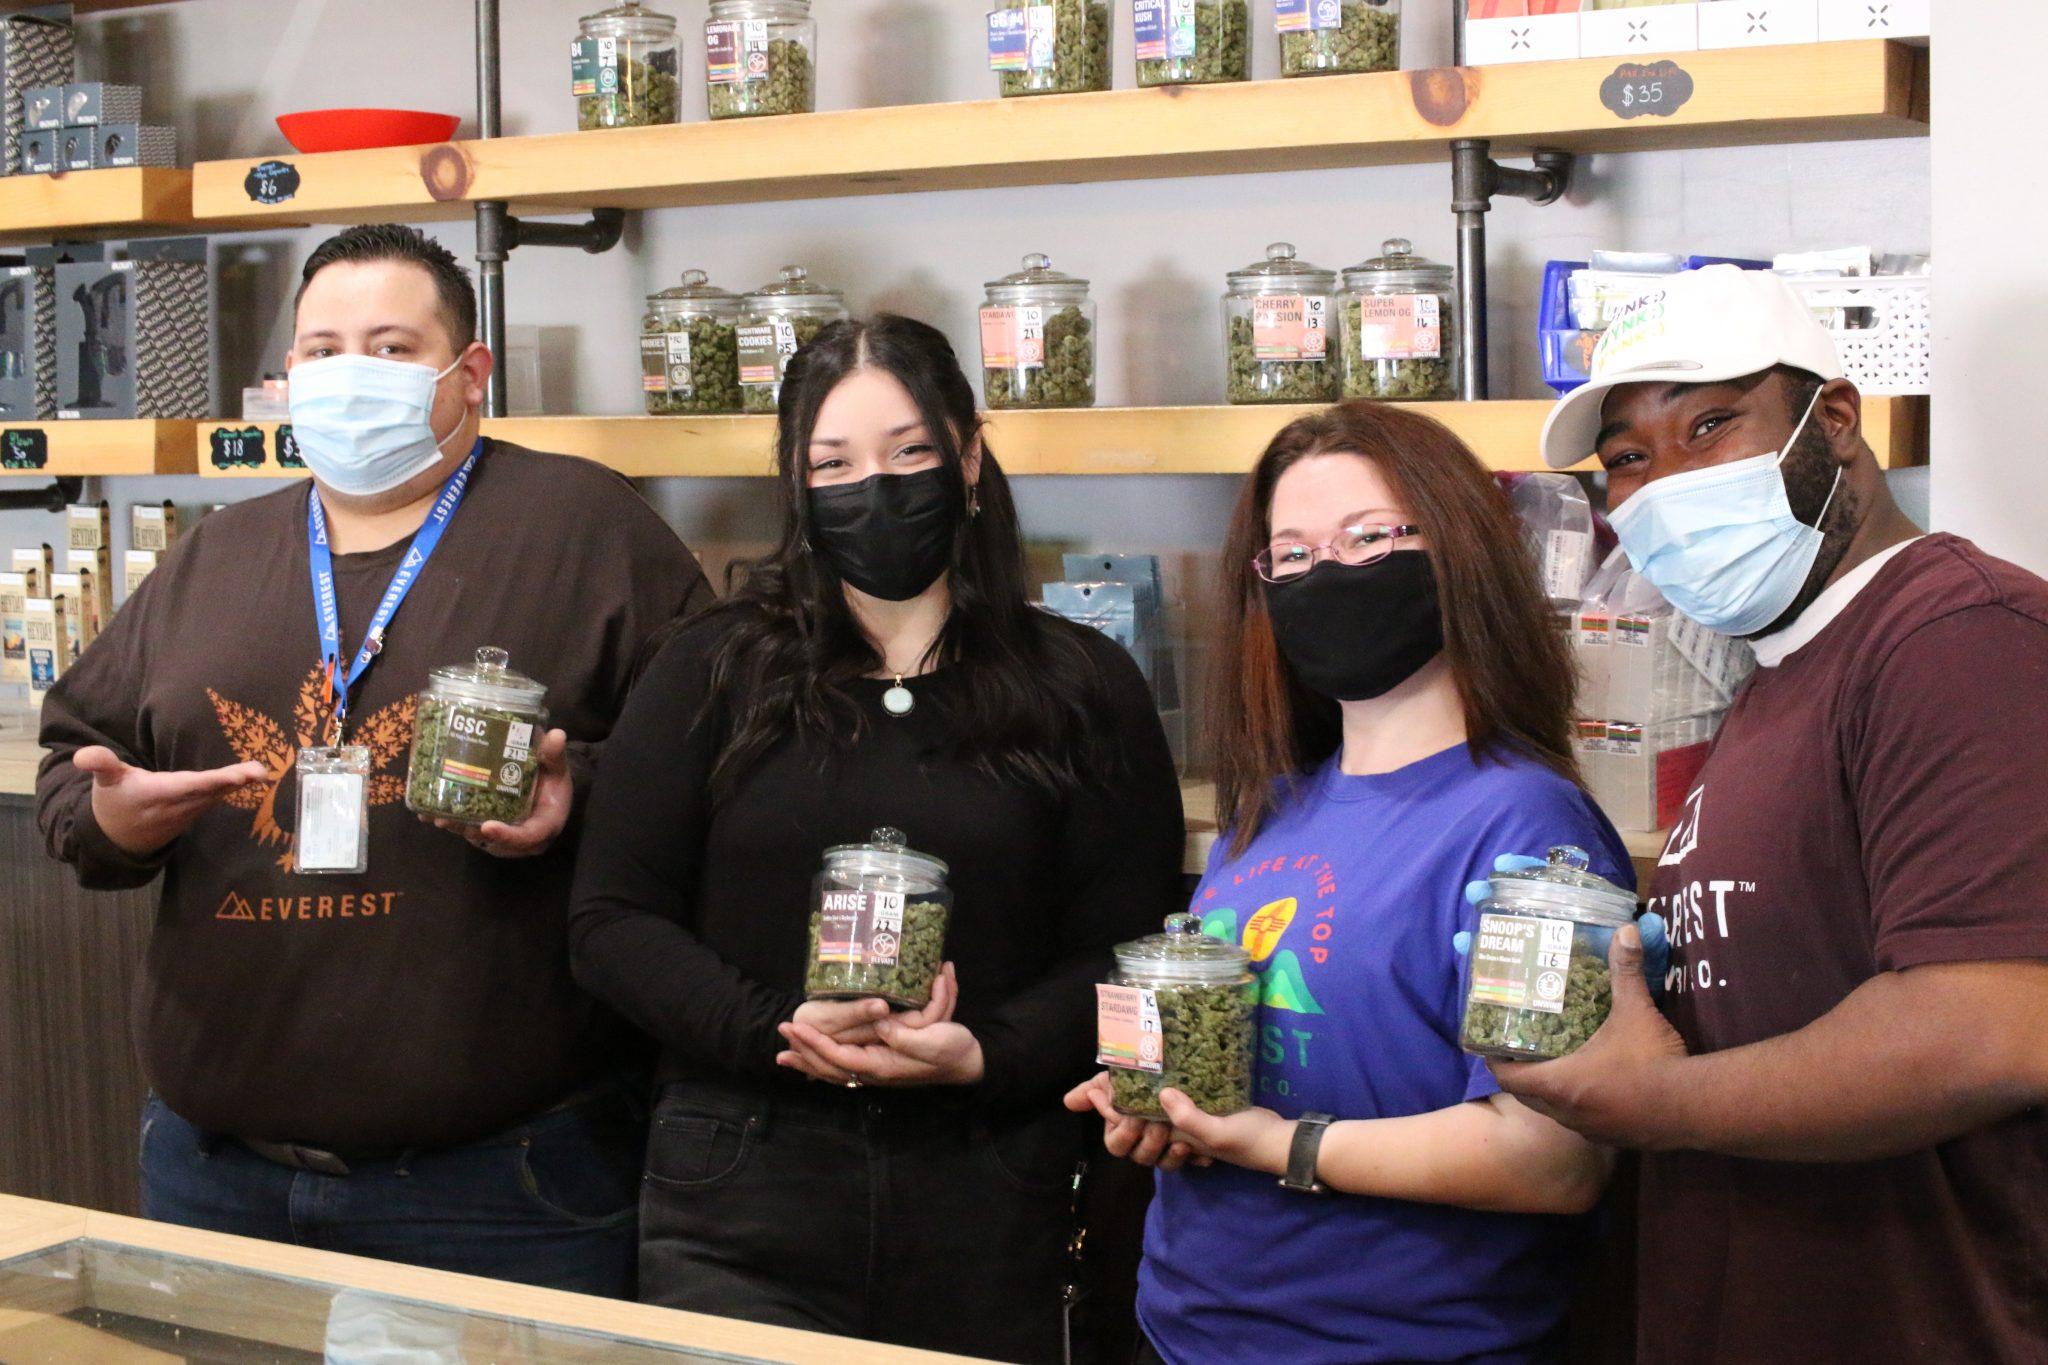 Everest cannabis co team